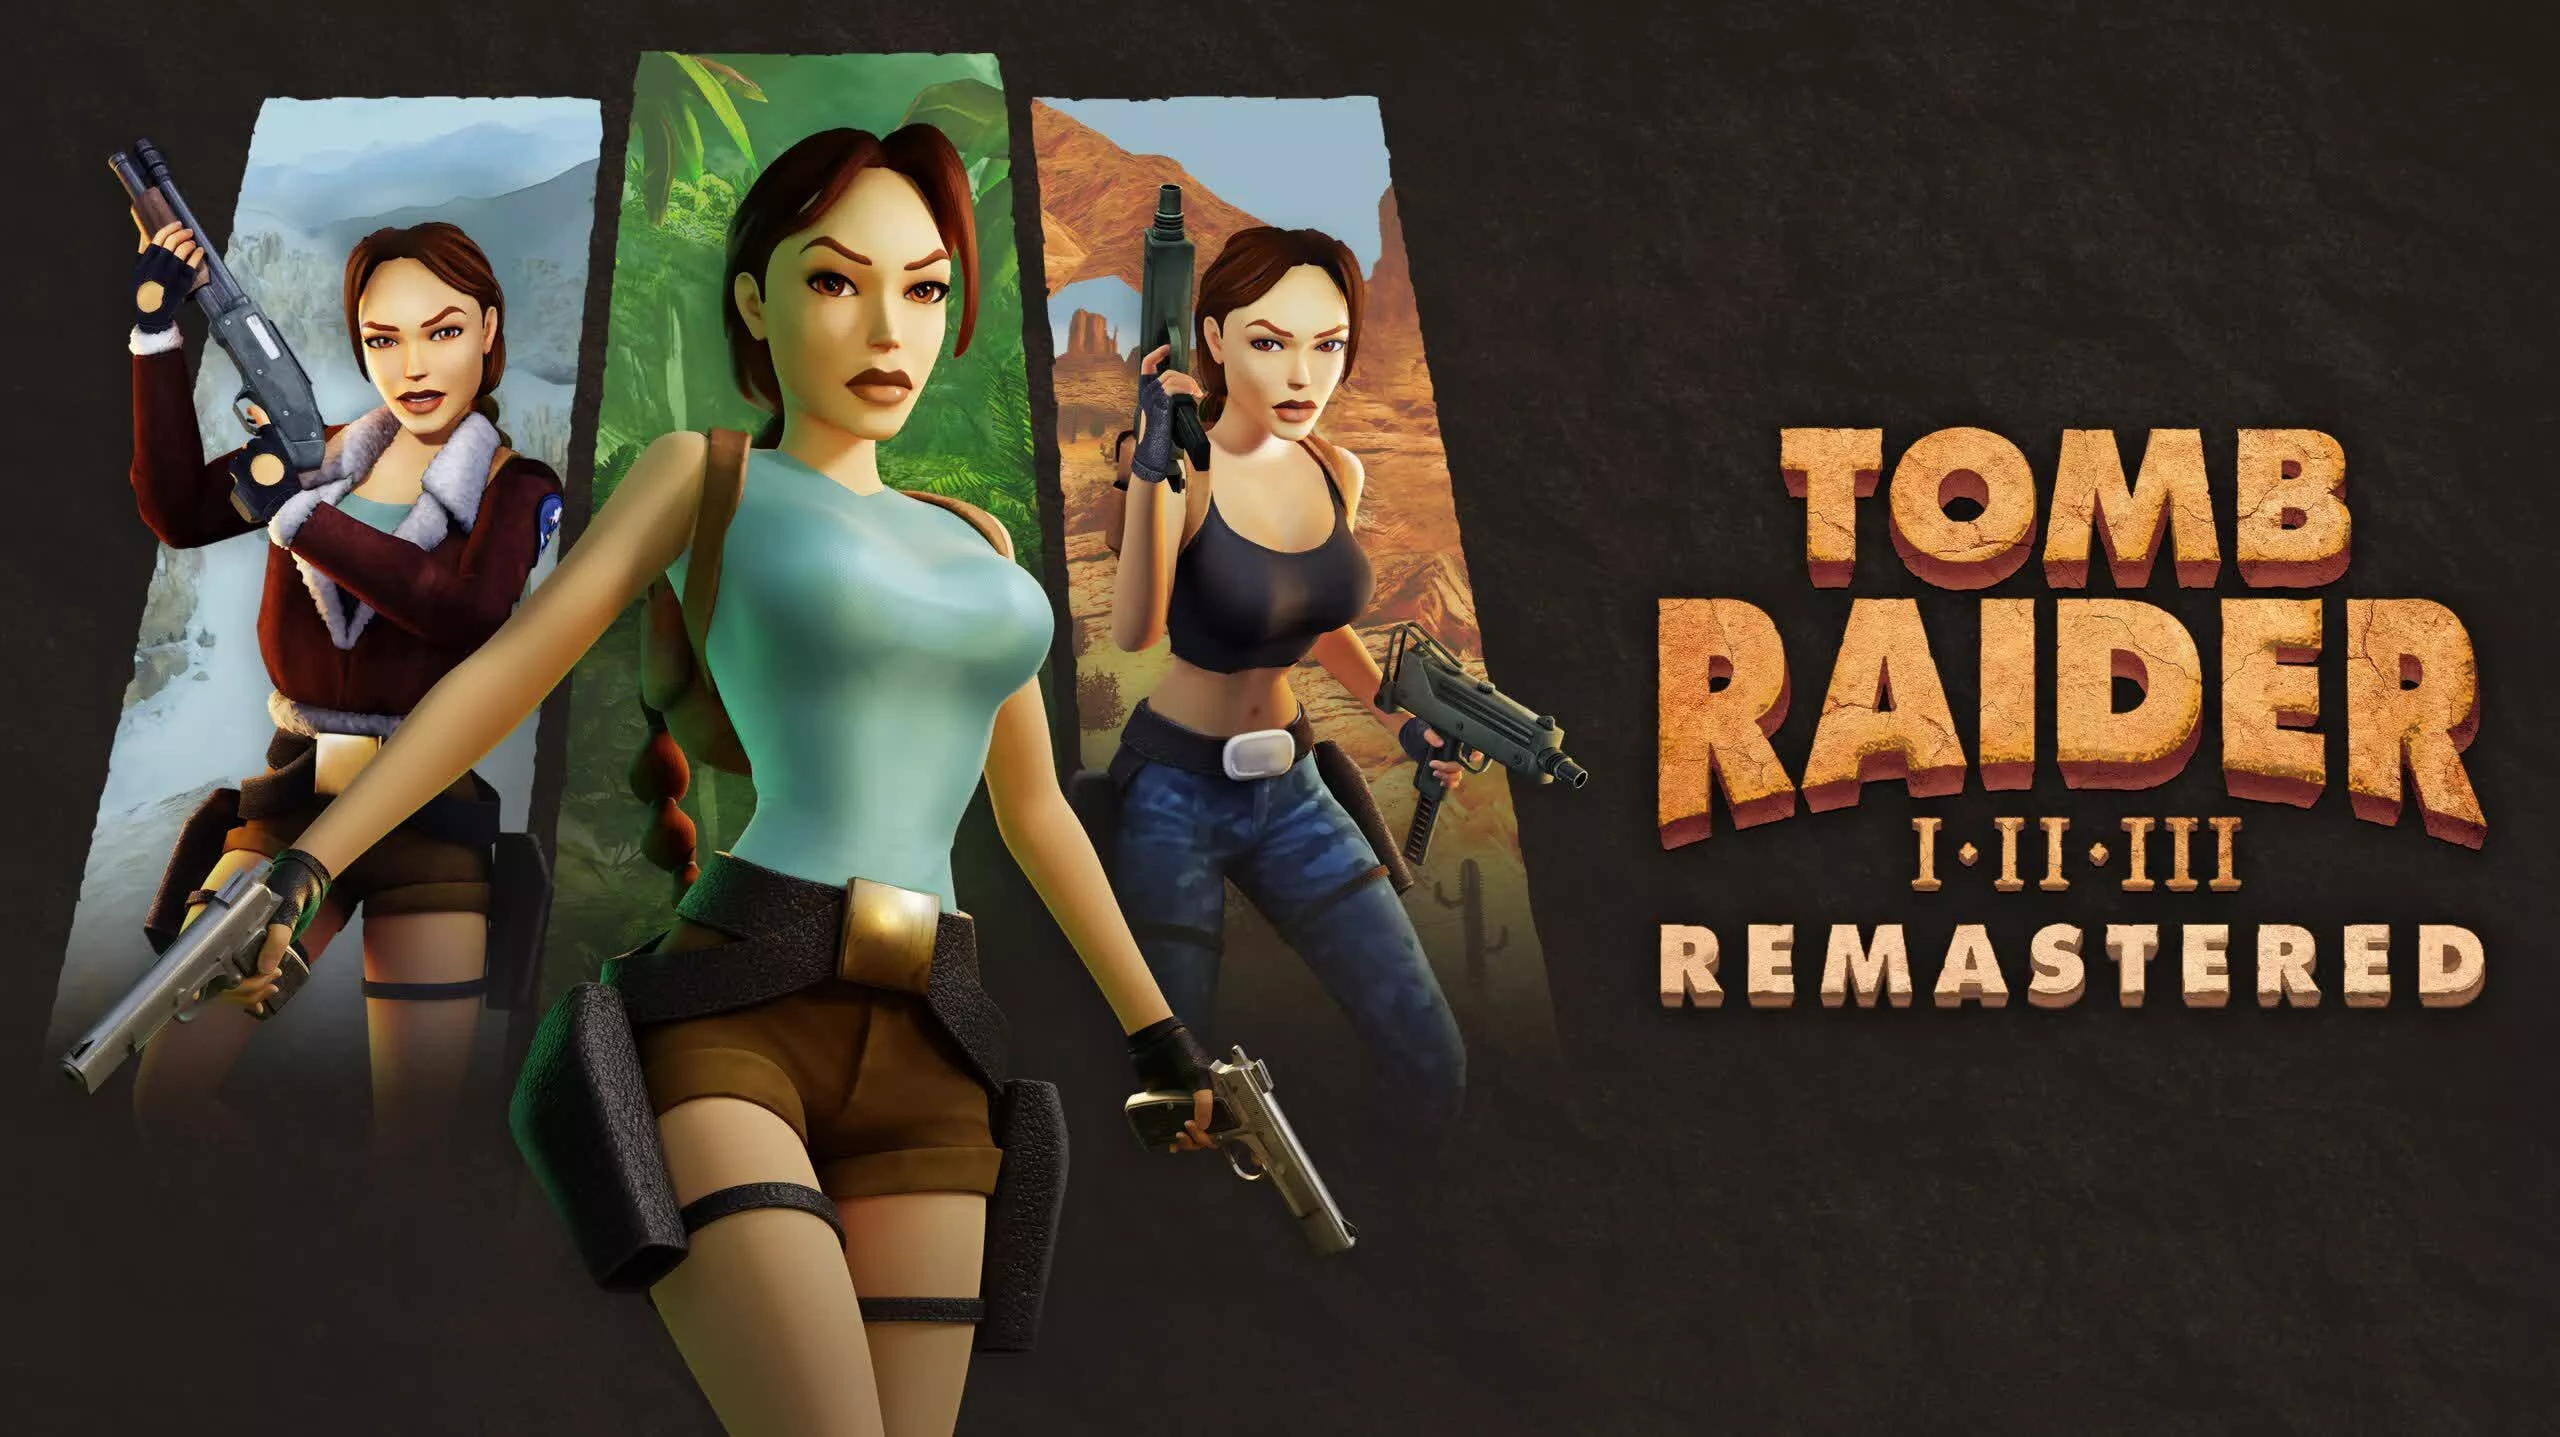 Los desarrolladores de Tomb Raider remaster detallan actualizaciones visuales y de juego opcionales antes del próximo lanzamiento